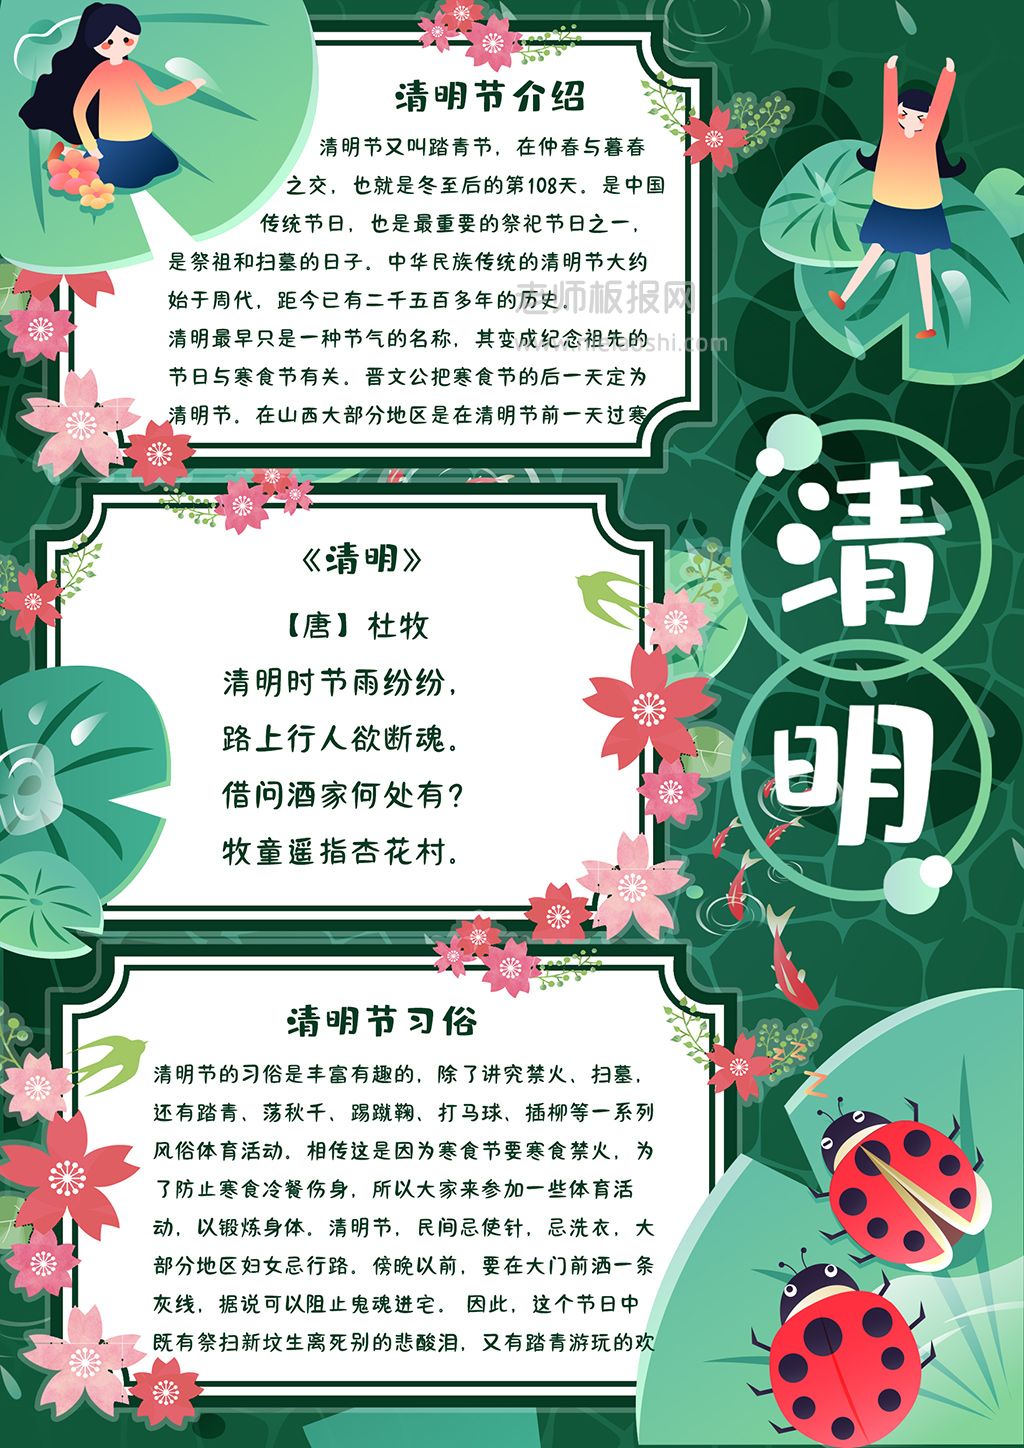 清明节漂亮优秀简洁的中国风清明手抄报图片- 老师板报网